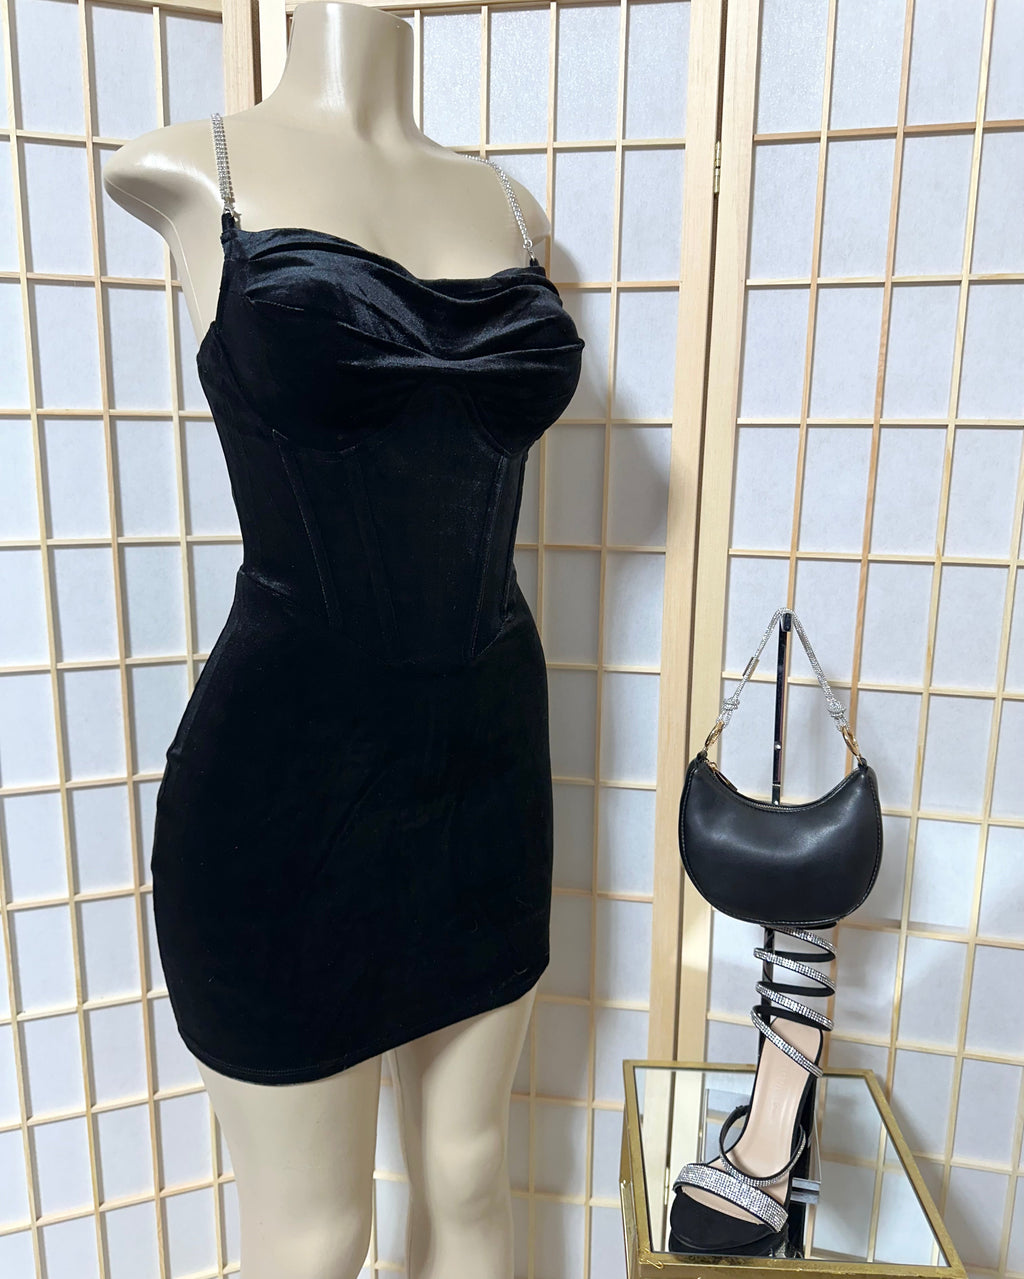 The “Velvet & Shimmer” Corset Dress